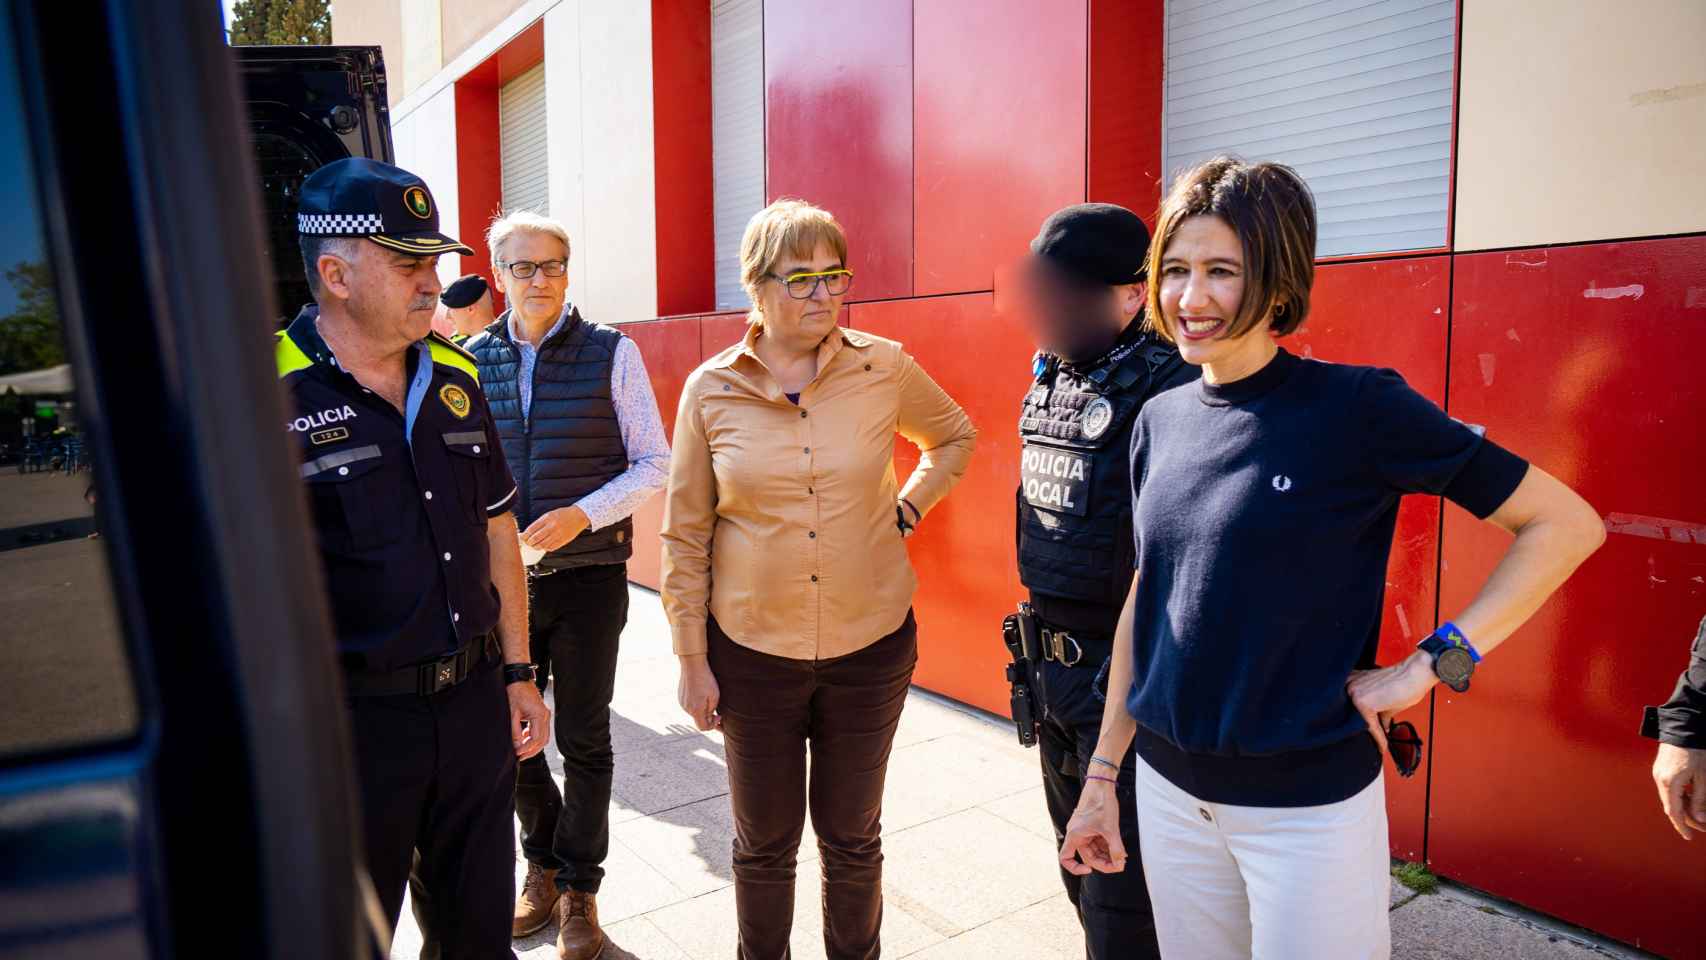 La alcaldesa Núria Parlon presentando el nuevo vehículo policial / AJUNTAMENT DE SANTA COLOMA